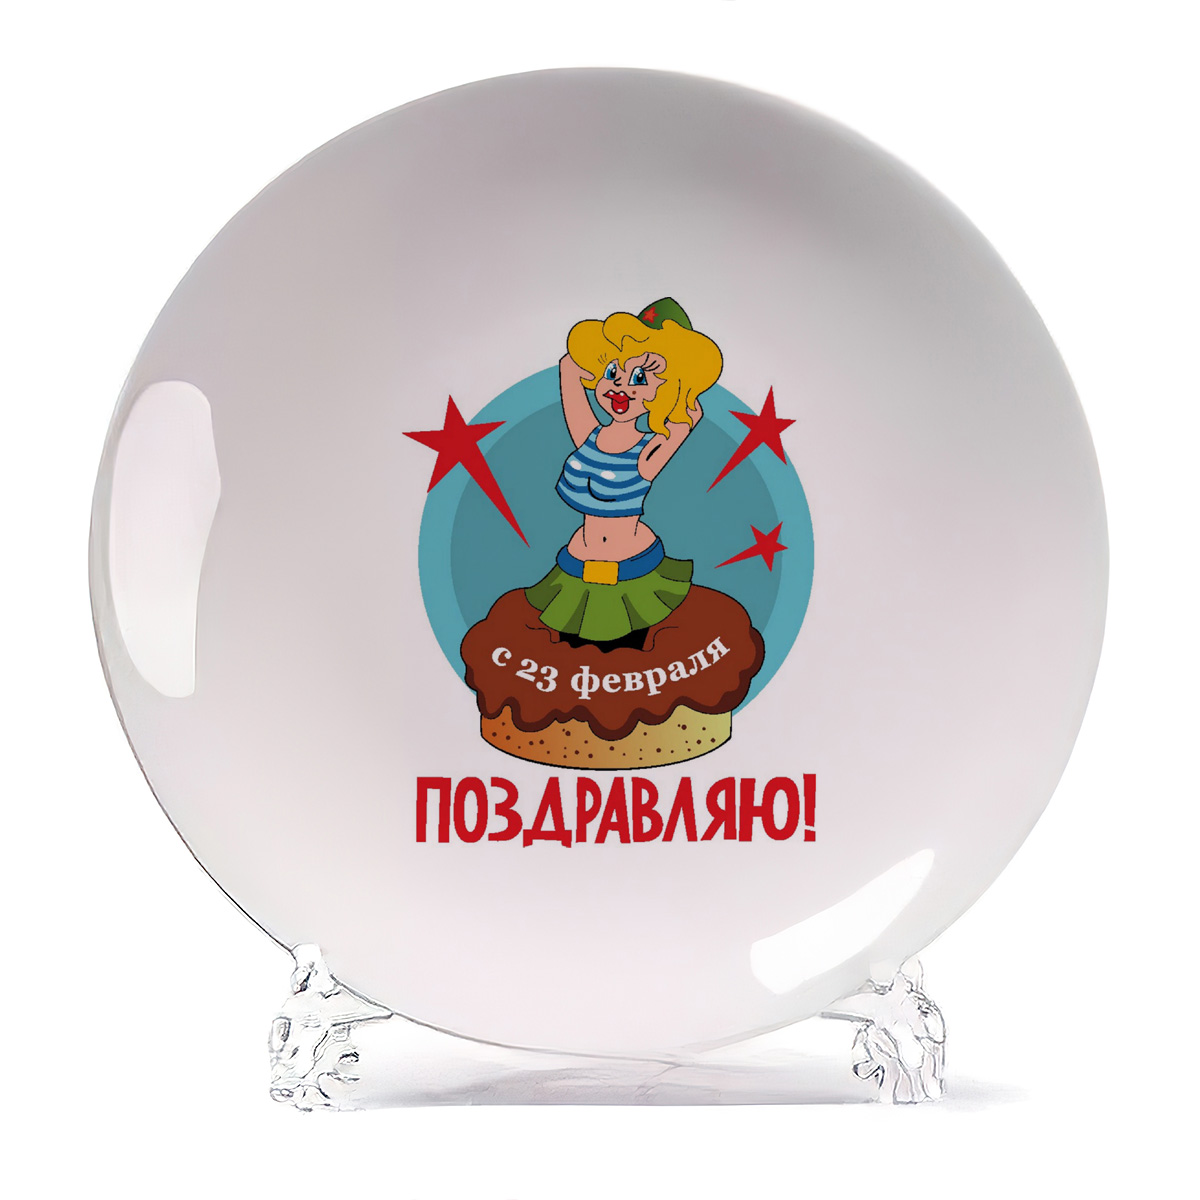 фото Декоративная тарелка coolpodarok с 23 февраля, поздравляю 21x21 см